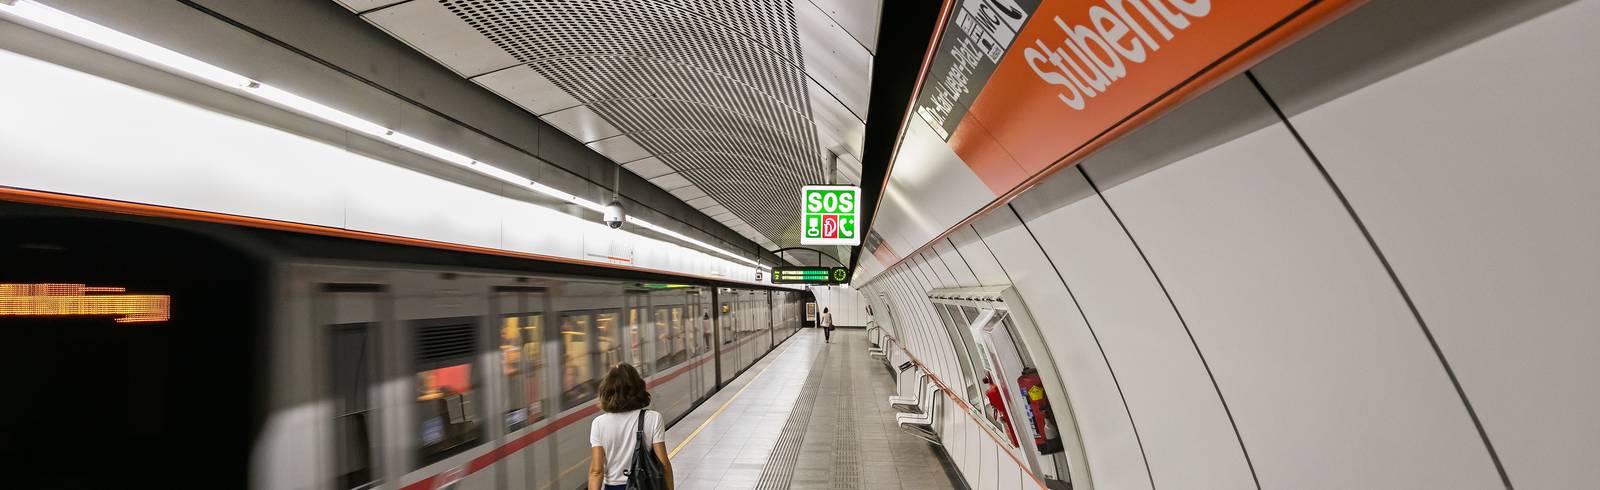 Covid-19: Wiener Linien fahren weiter, Fahrgäste bleiben aber aus